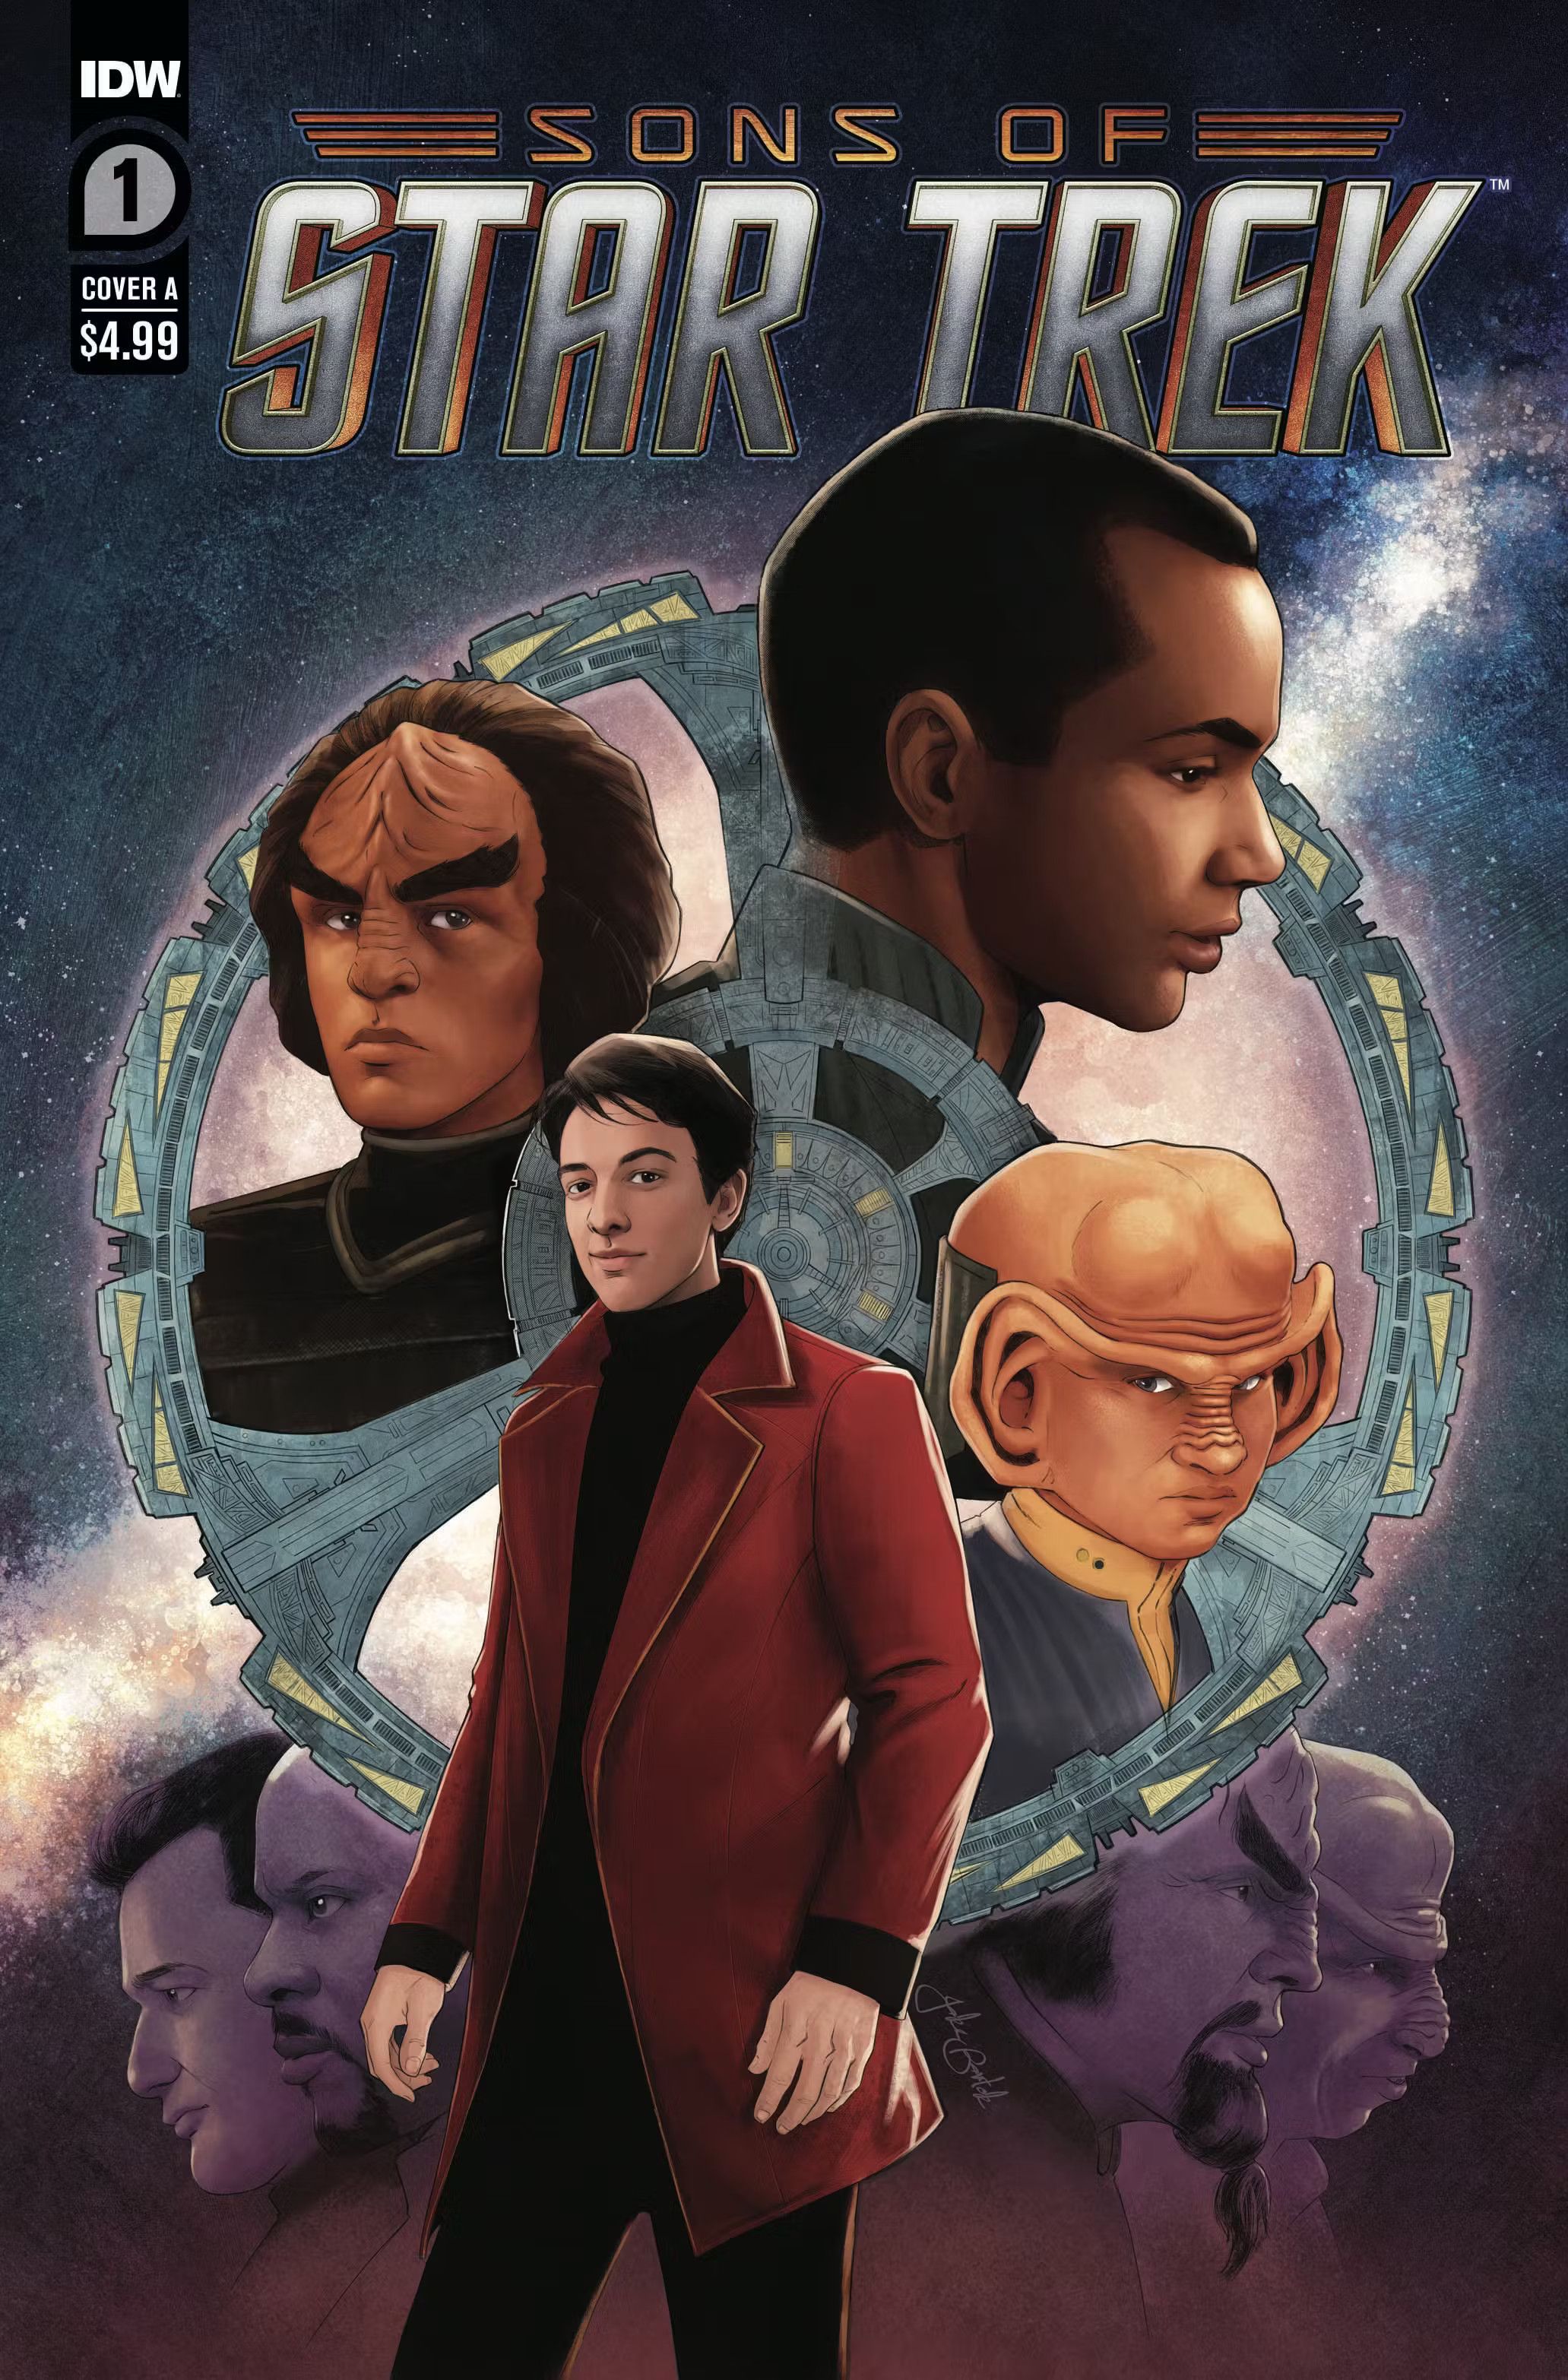 Sons of Star Trek Cover 1